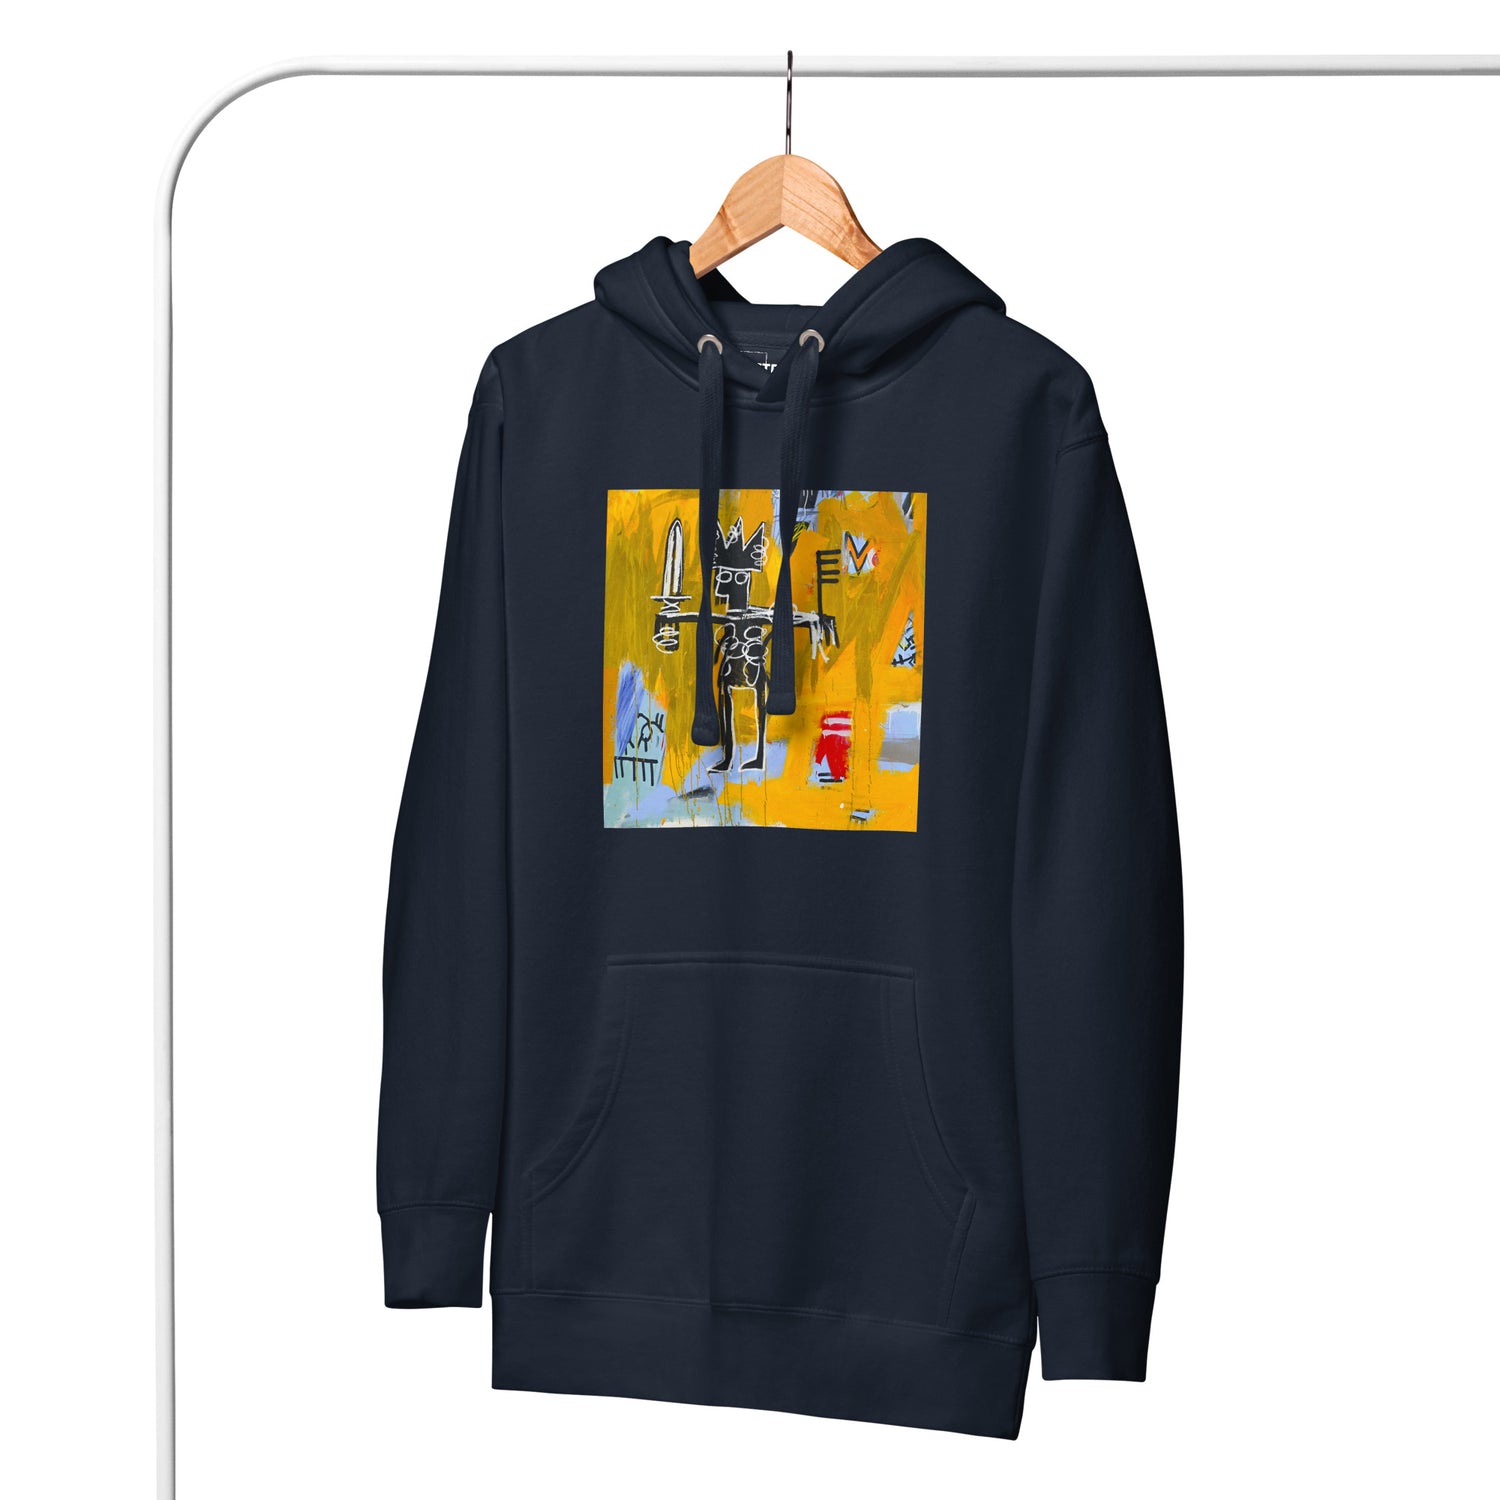 Jean-Michel Basquiat "Julius Caesar on Gold" Artwork Printed Premium Streetwear Sweatshirt Hoodie Navy Blue